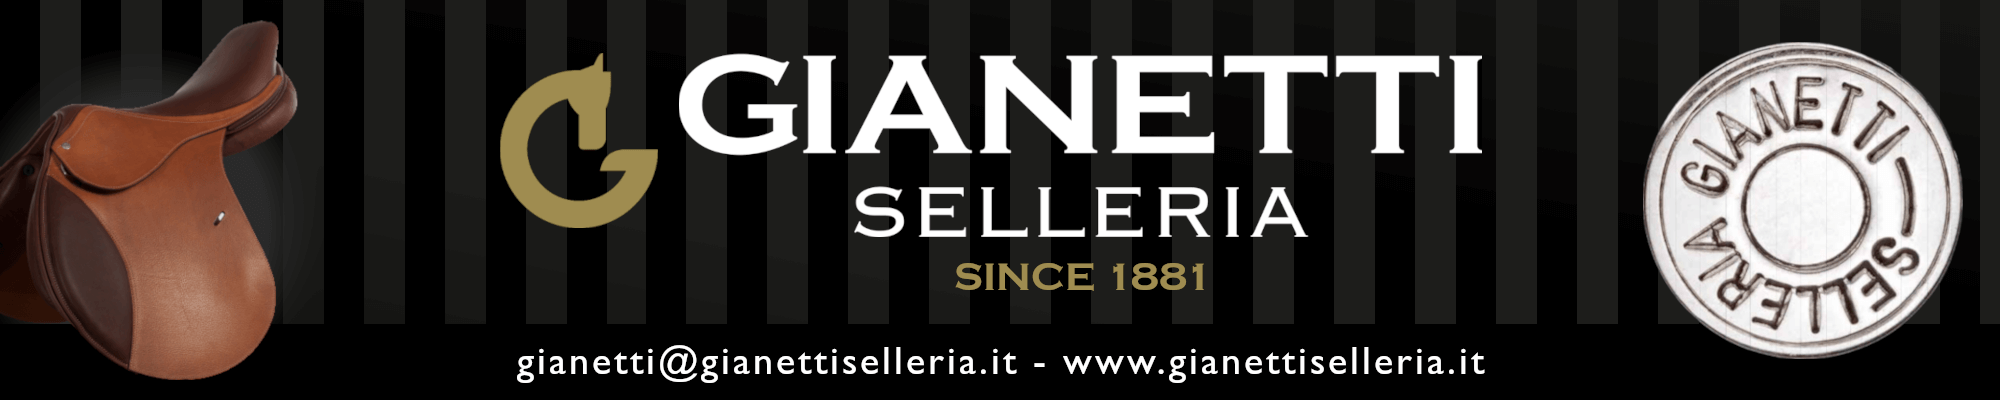 Selleria Gianetti